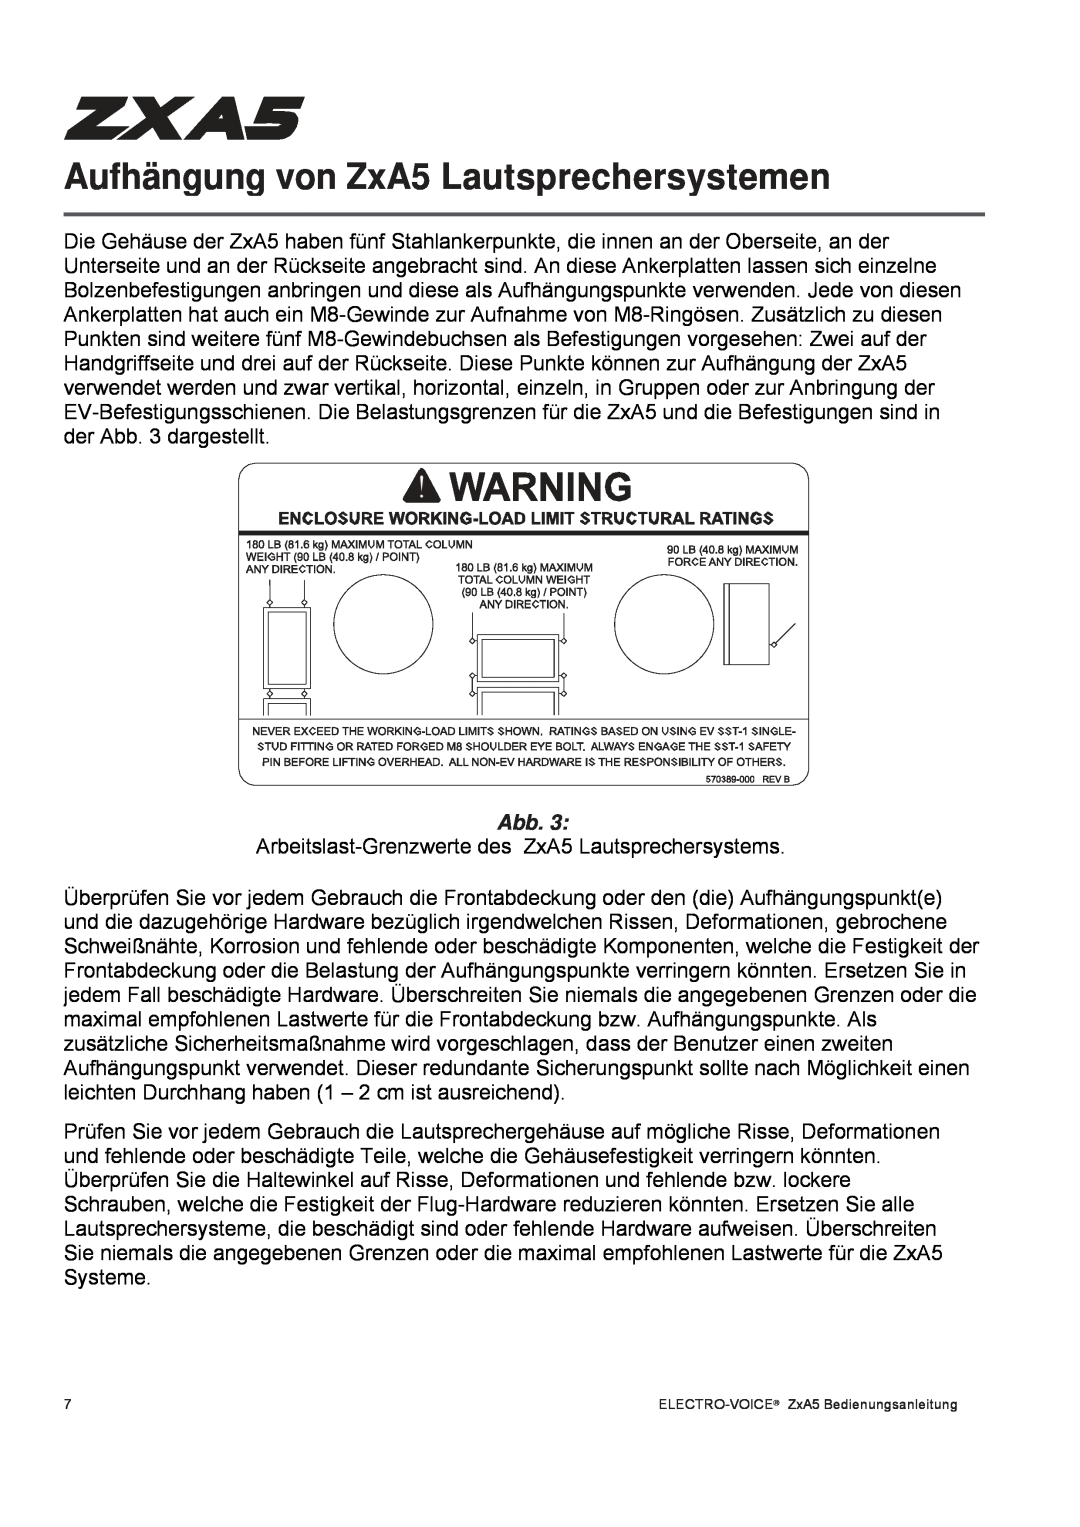 Pentax ZXA5-60, ZXA5-90 owner manual Aufhängung von ZxA5 Lautsprechersystemen, Abb 